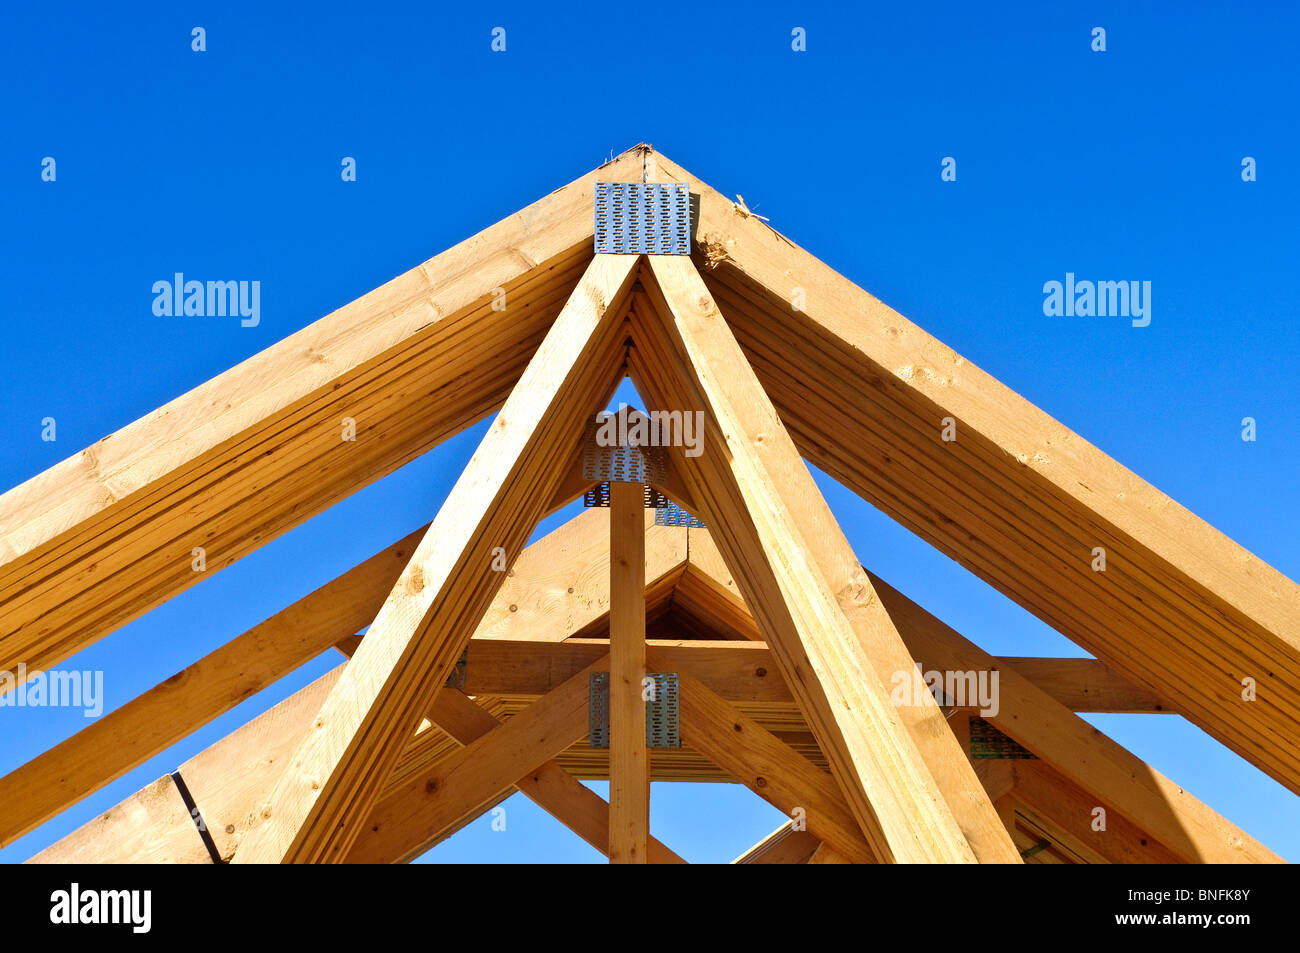 Fermes de toit en bois préfabriqués pour la construction de logements nouveaux - Indre-et-Loire, France. Banque D'Images